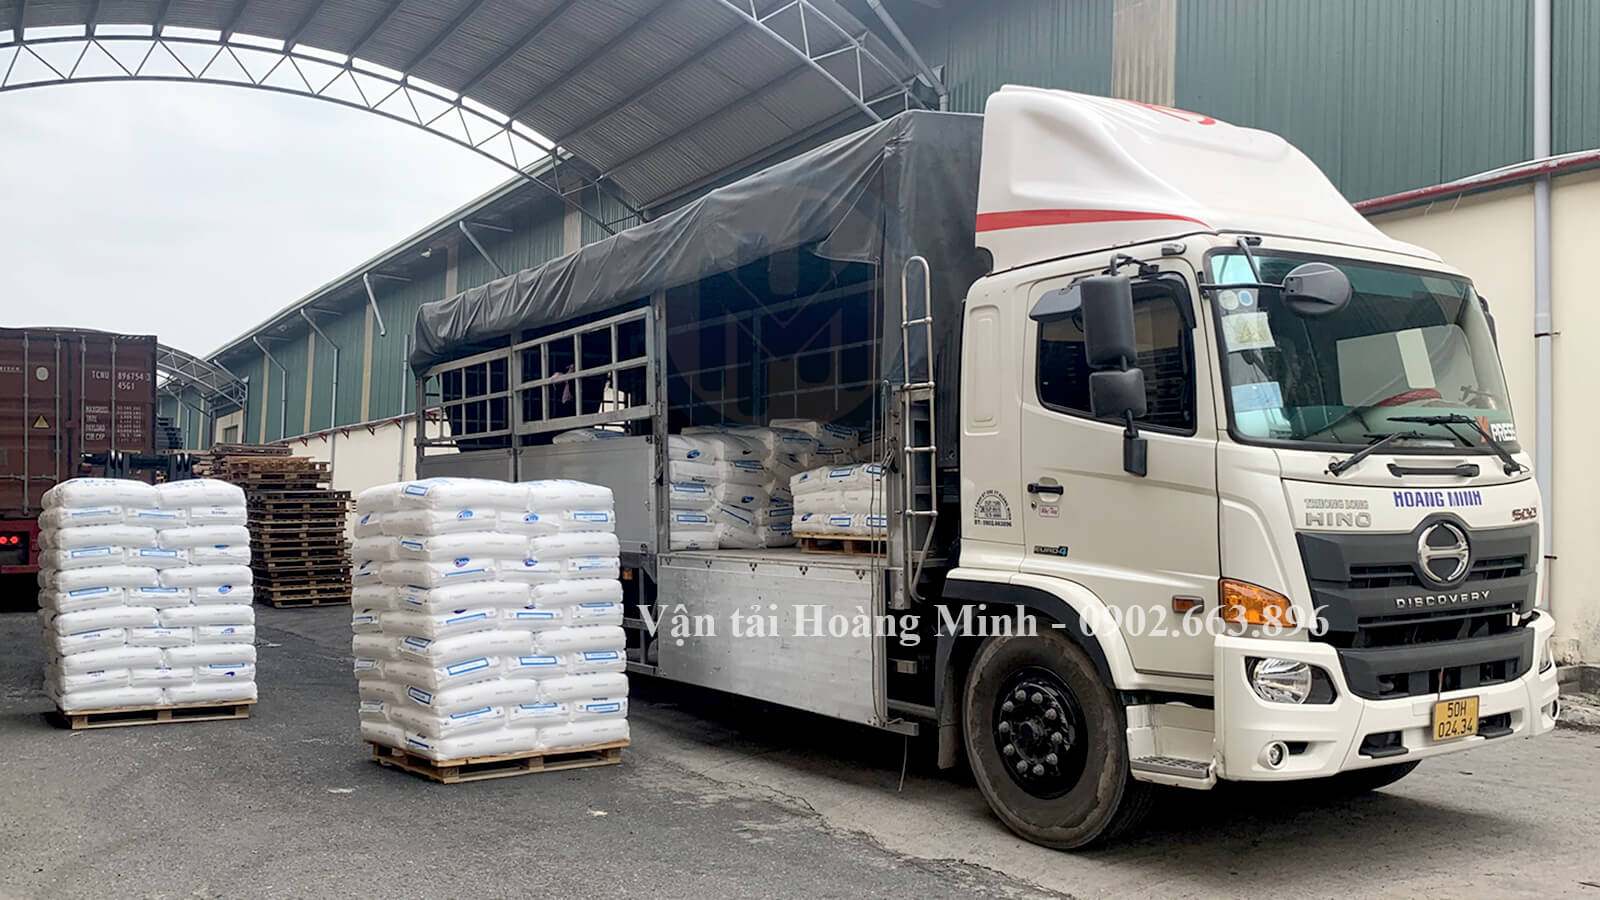 Xe tải Hoàng Minh vận chuyển hàng hoá bột trét cho khách hàng tại KCN Bình Long tỉnh An Giang.jpg